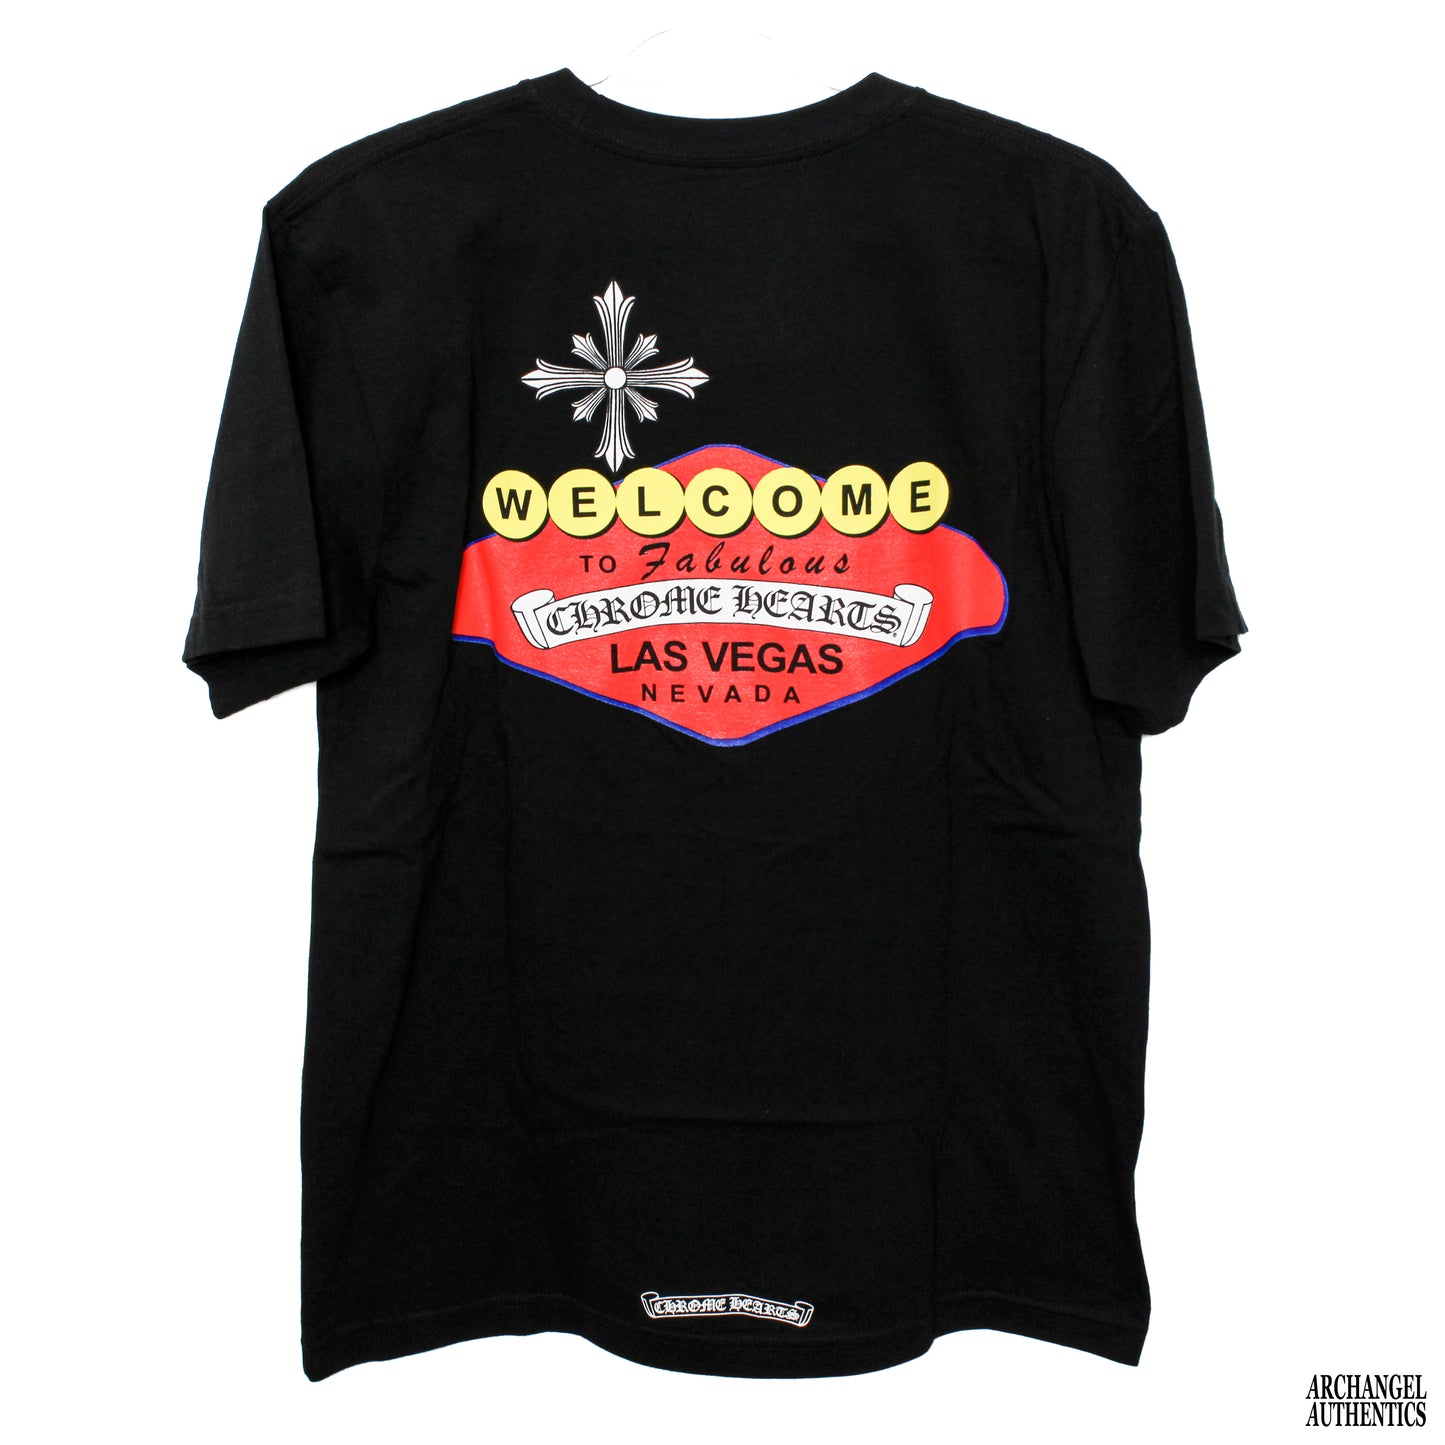 Camiseta exclusiva de Chrome Hearts Las Vegas con estampado en color